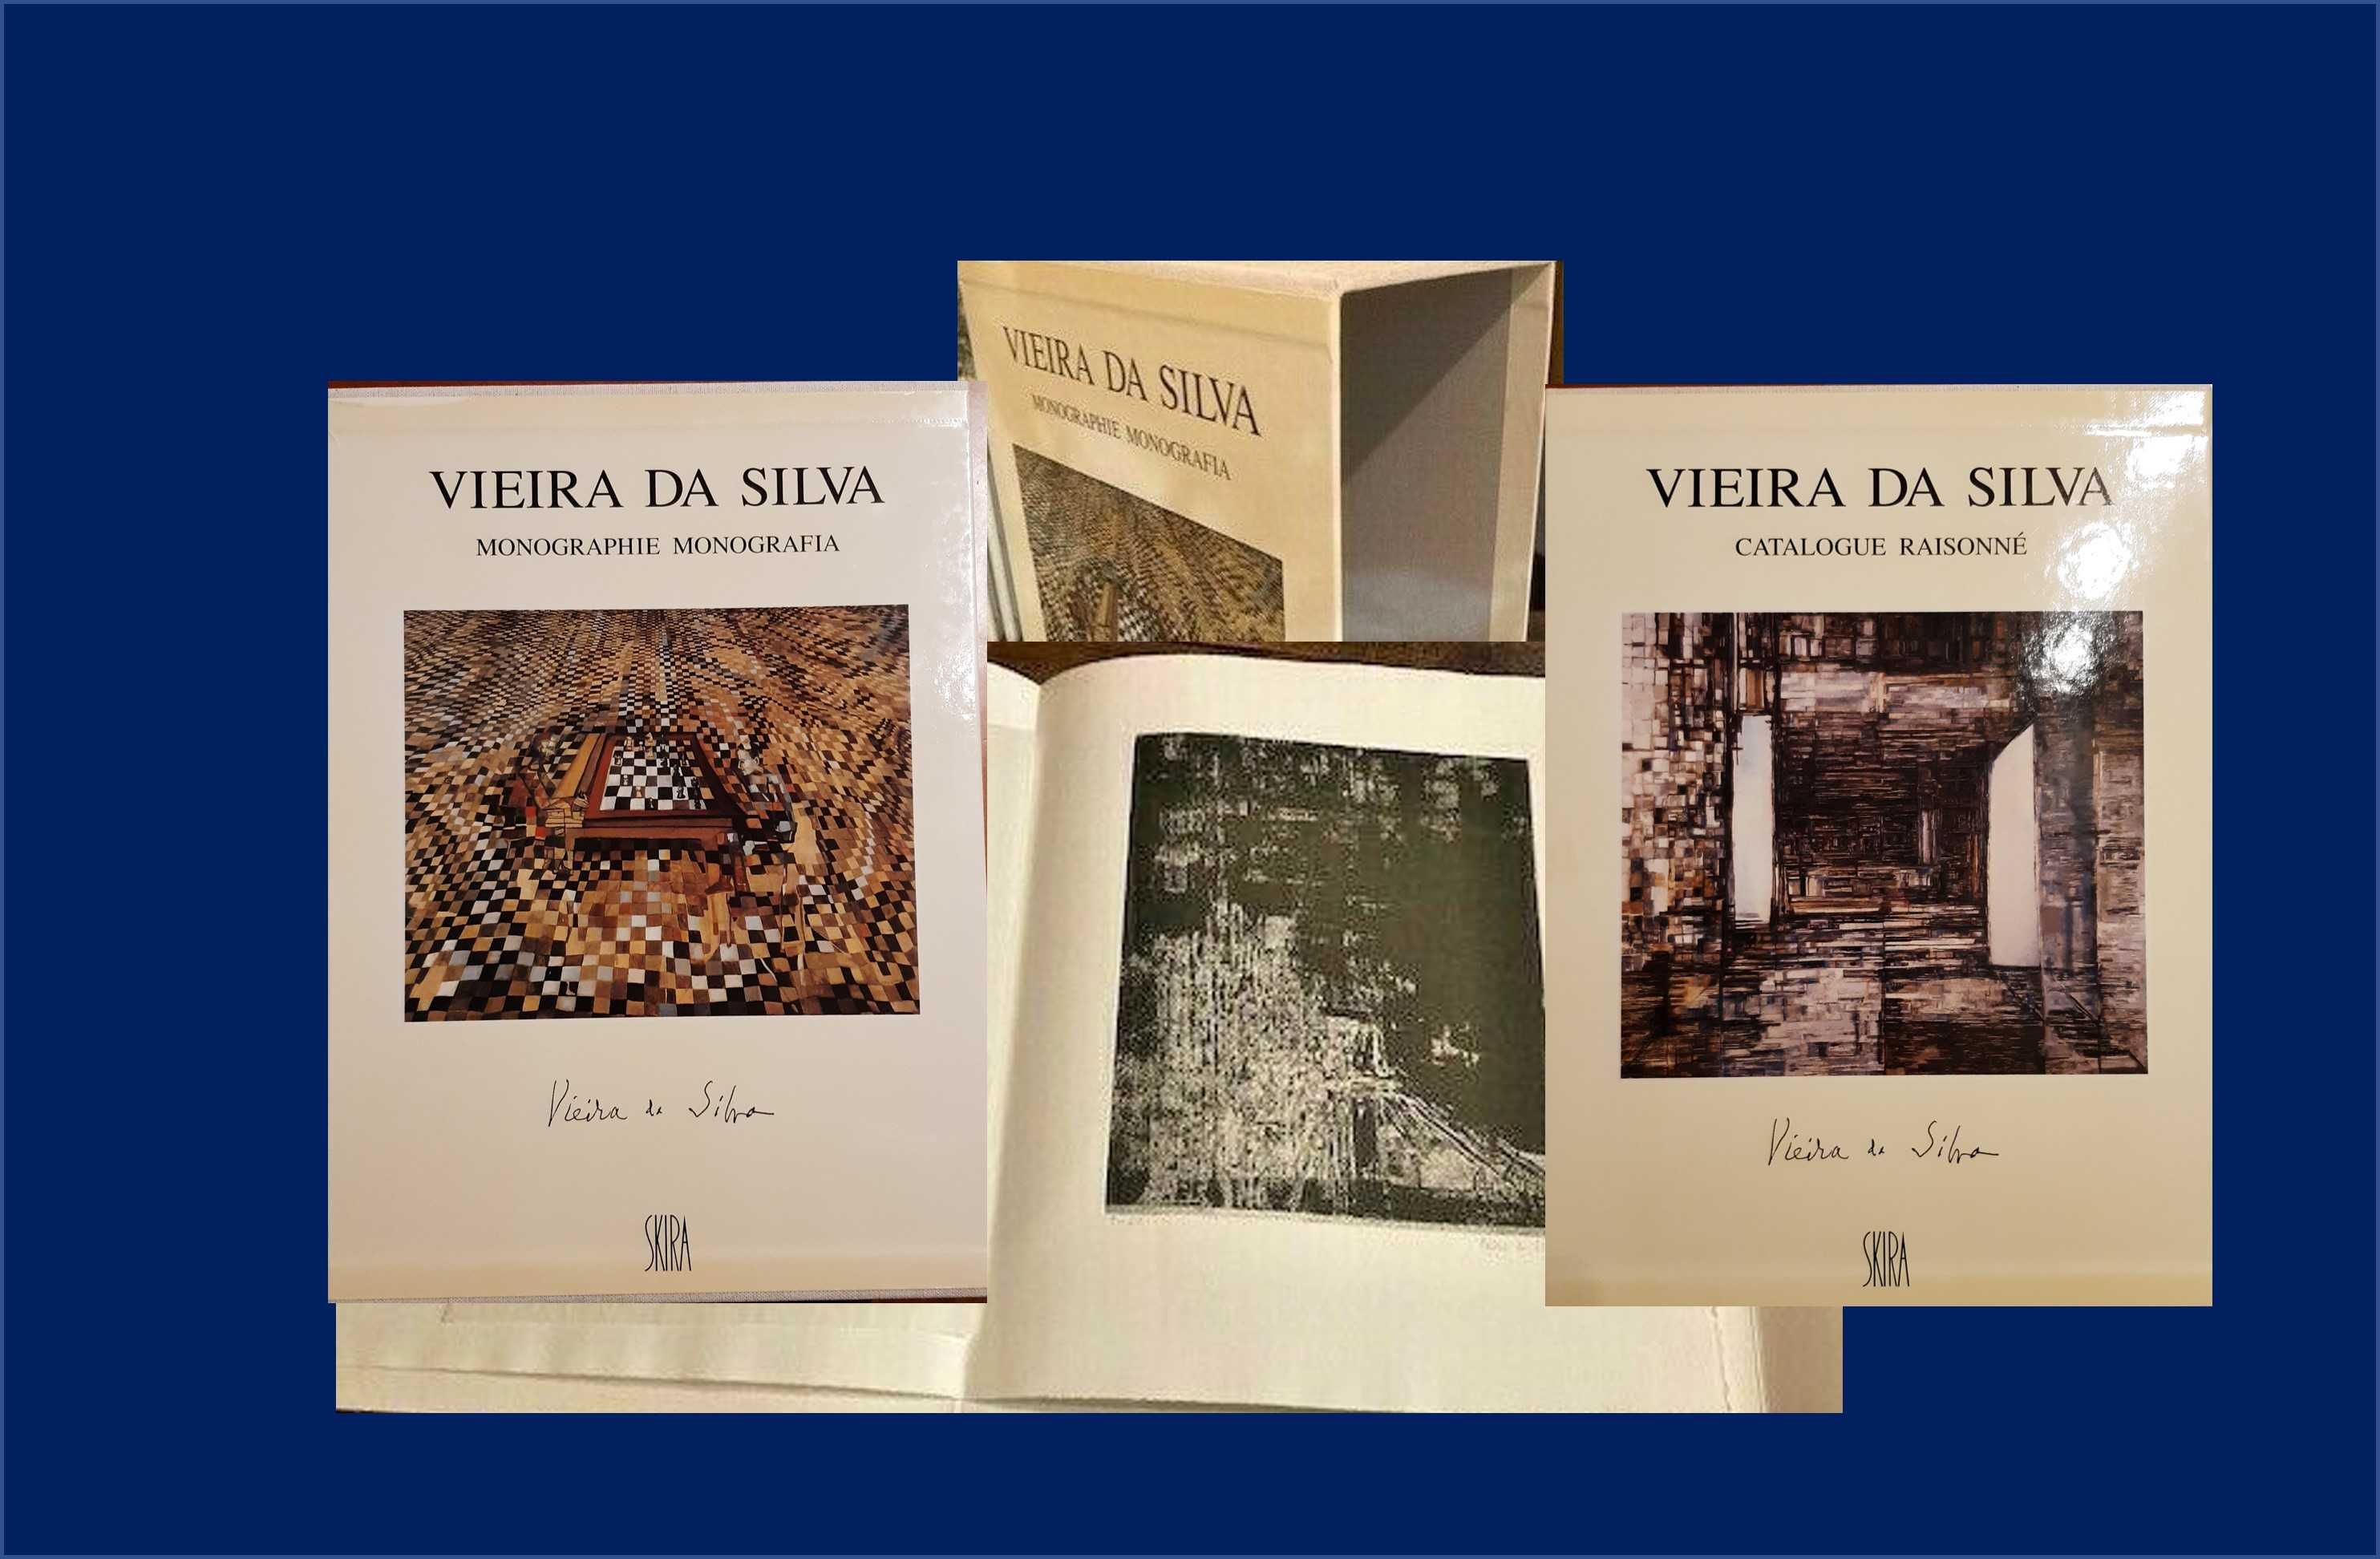 VIEIRA DA SILVA - Catalogue raisonné, monografia e litografia assinada